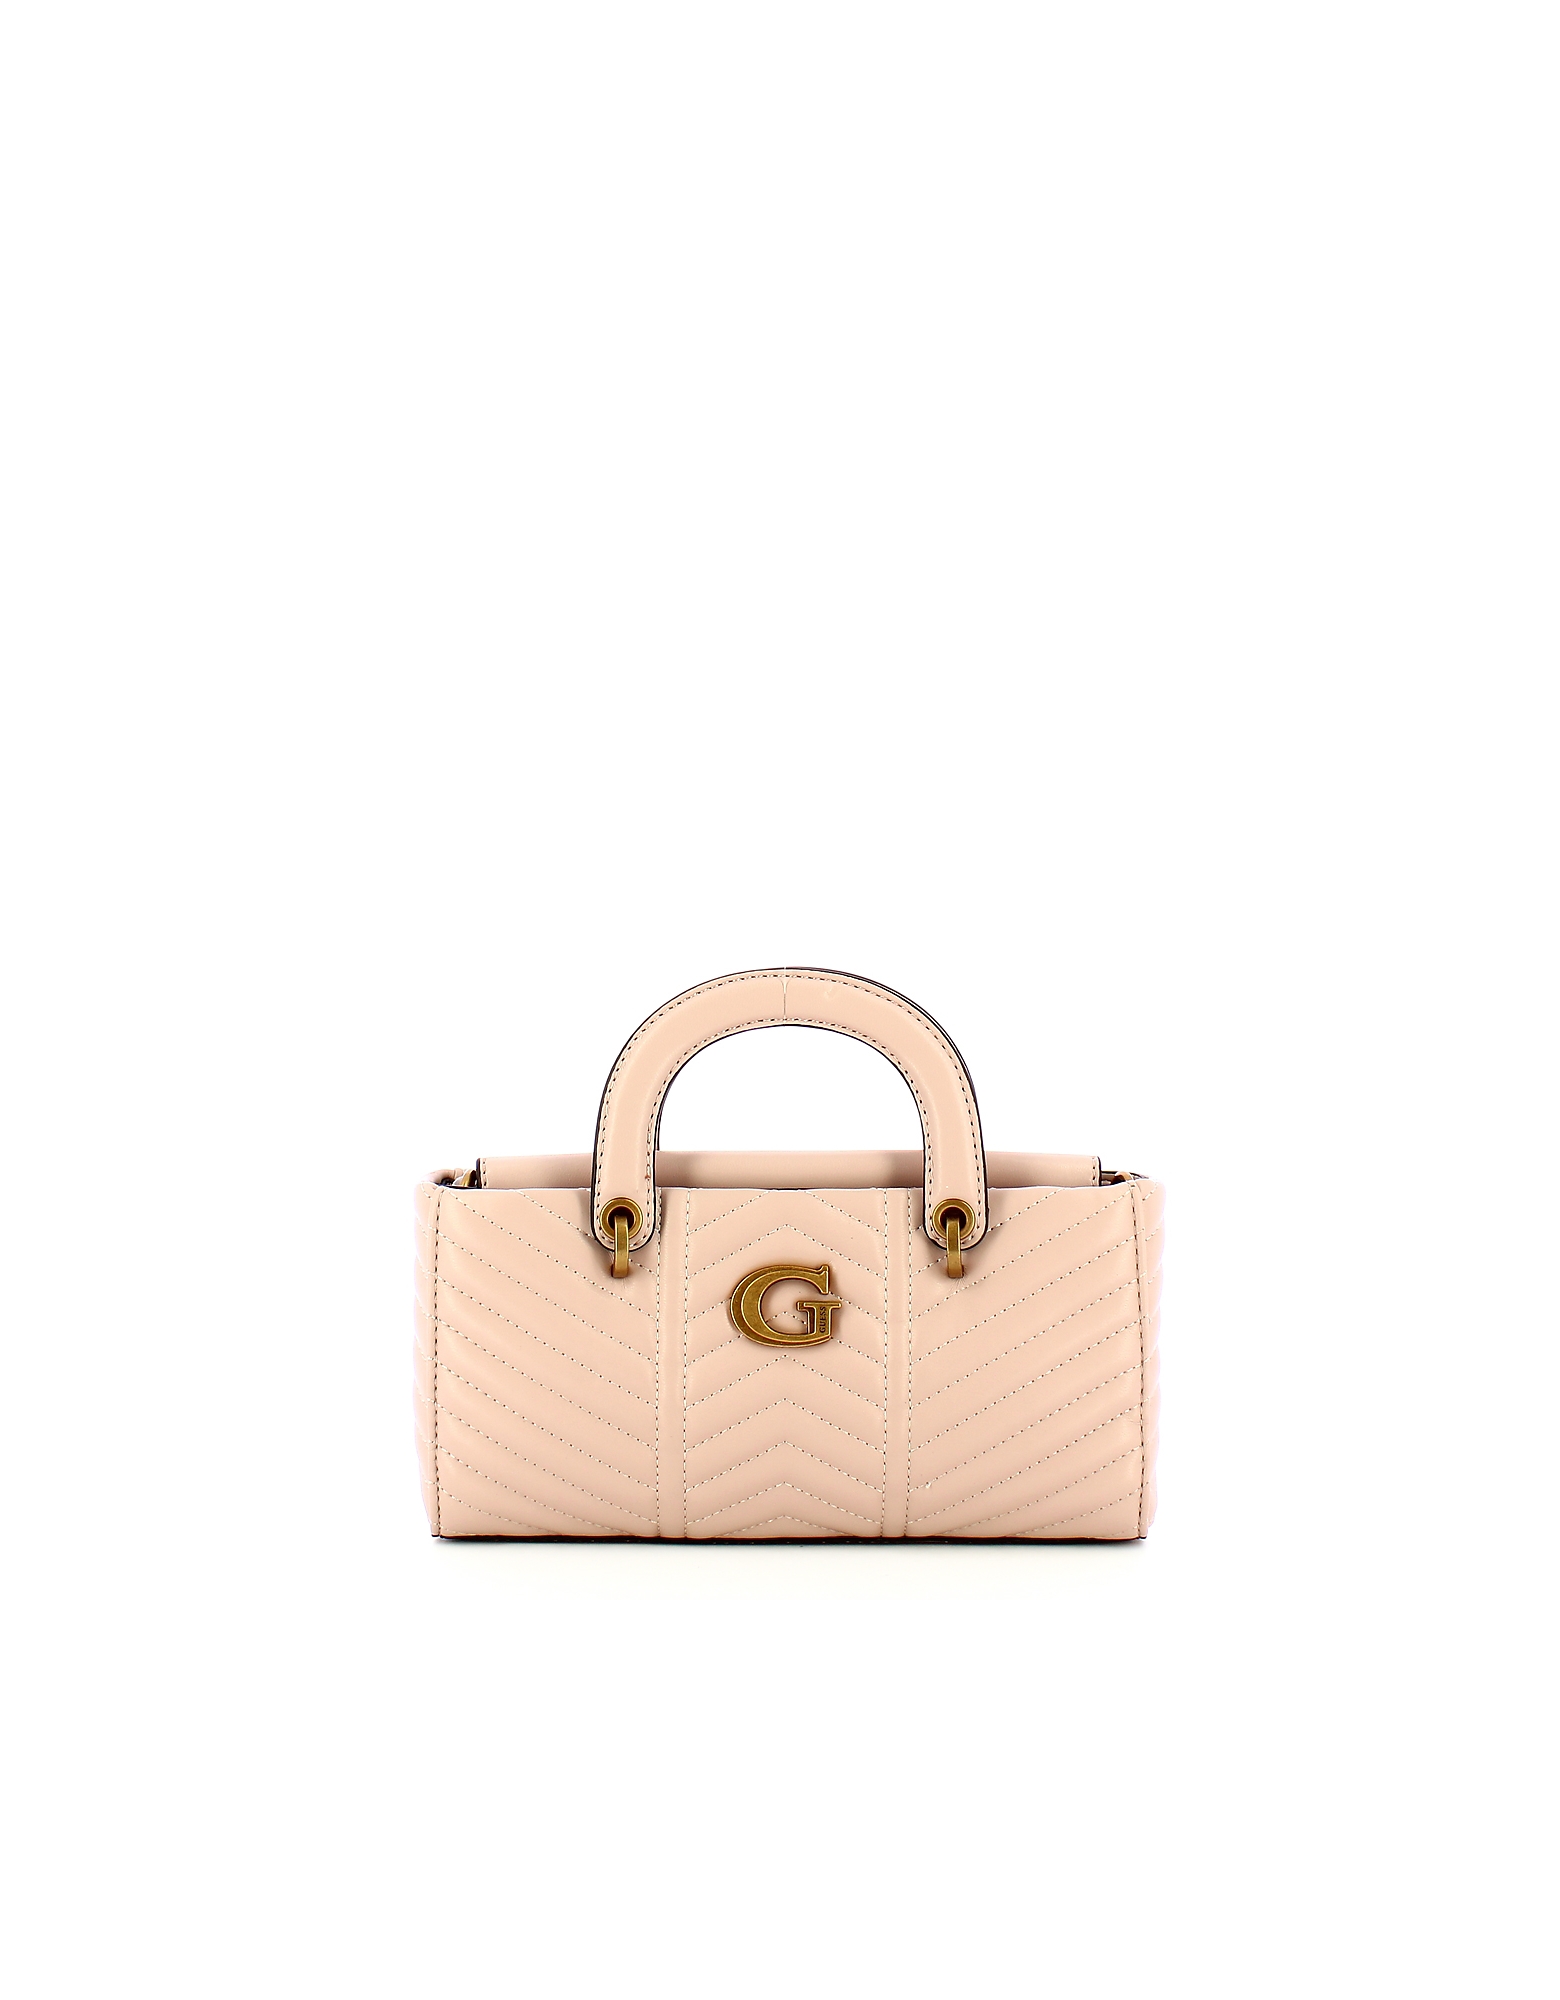 Guess Designer Handbags Women's Mini Bag In Pattern